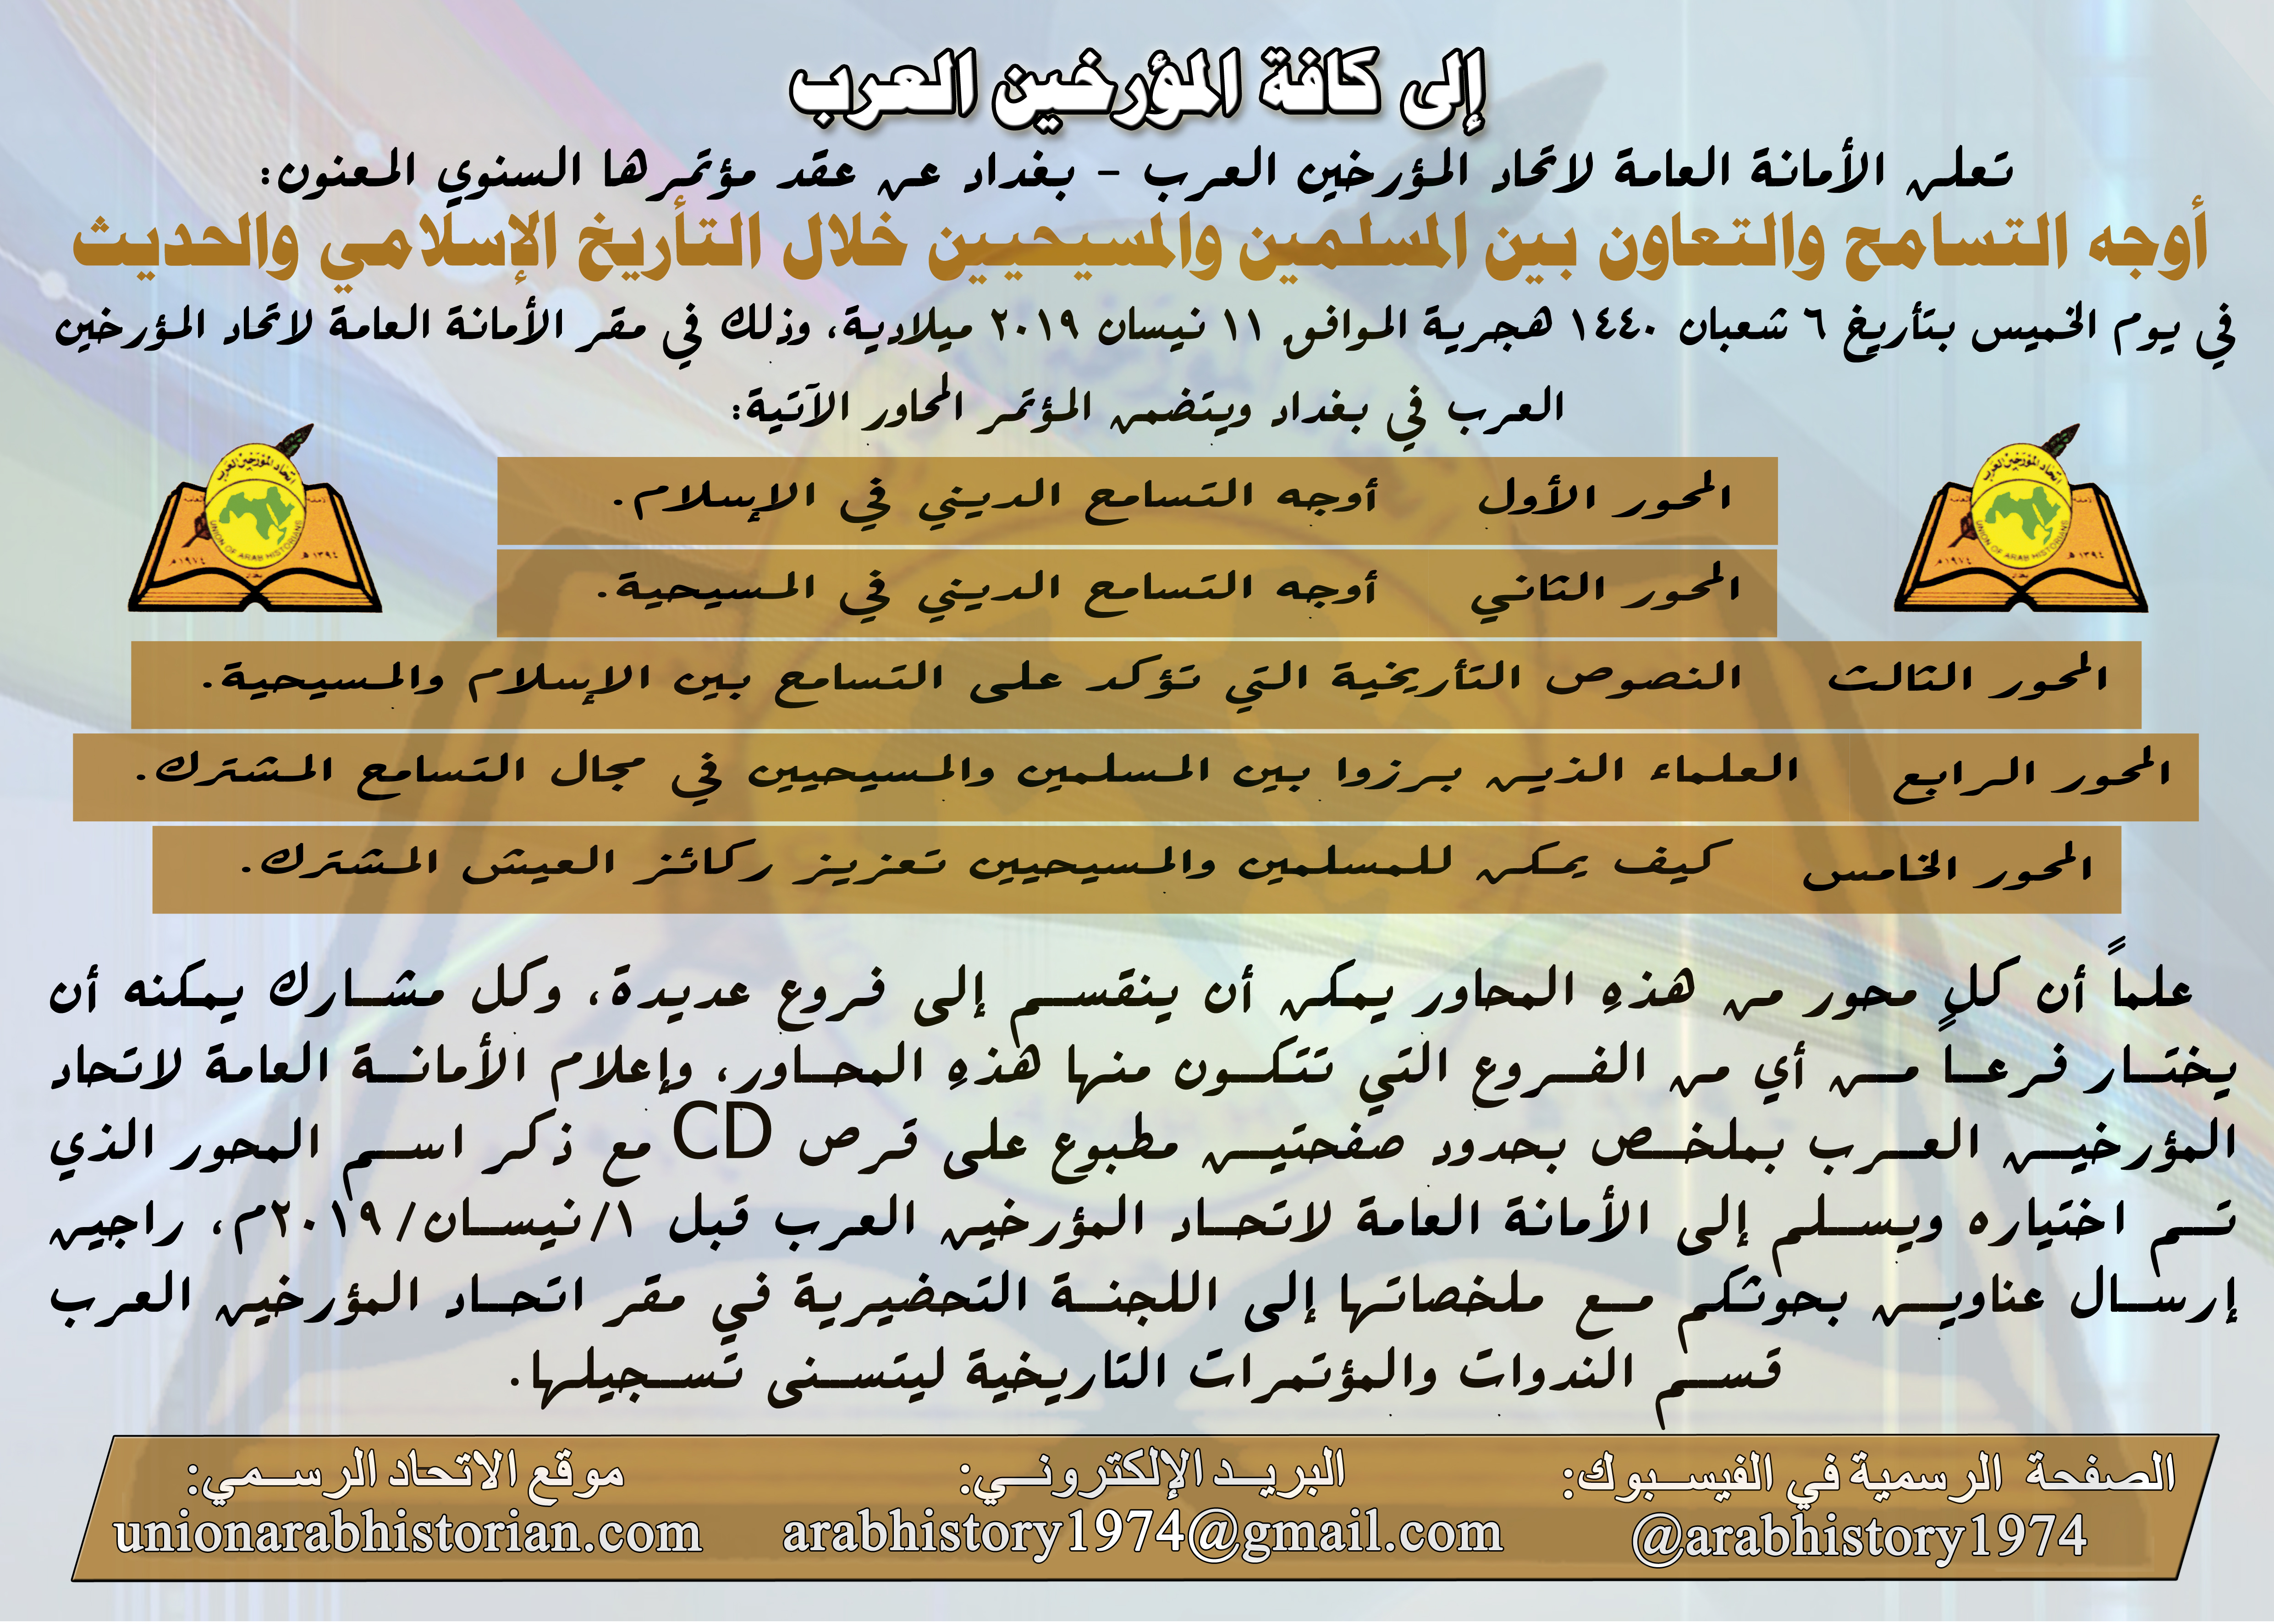 اتحاد المؤرخين العرب – بغداد يقيم مؤتمر أوجه التسامح والتعاون بين المسلمين والمسيحيين خلال التأريخ الإسلامي والحديث